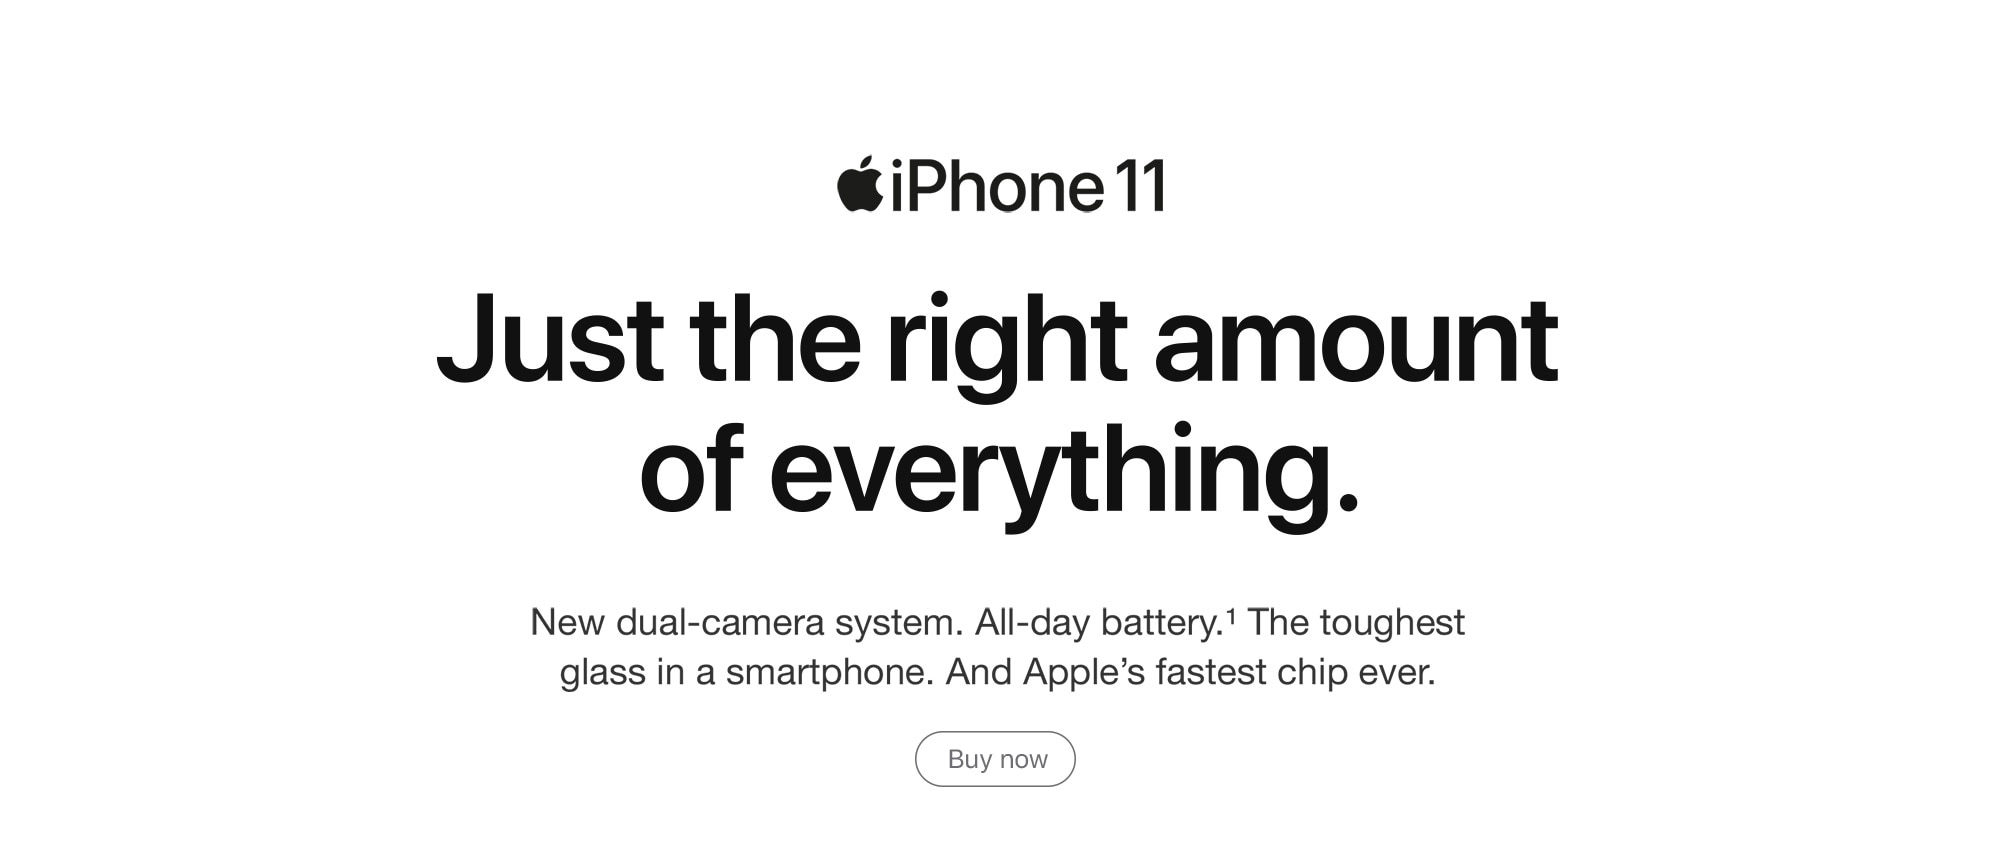 Buy iPhone 11 now